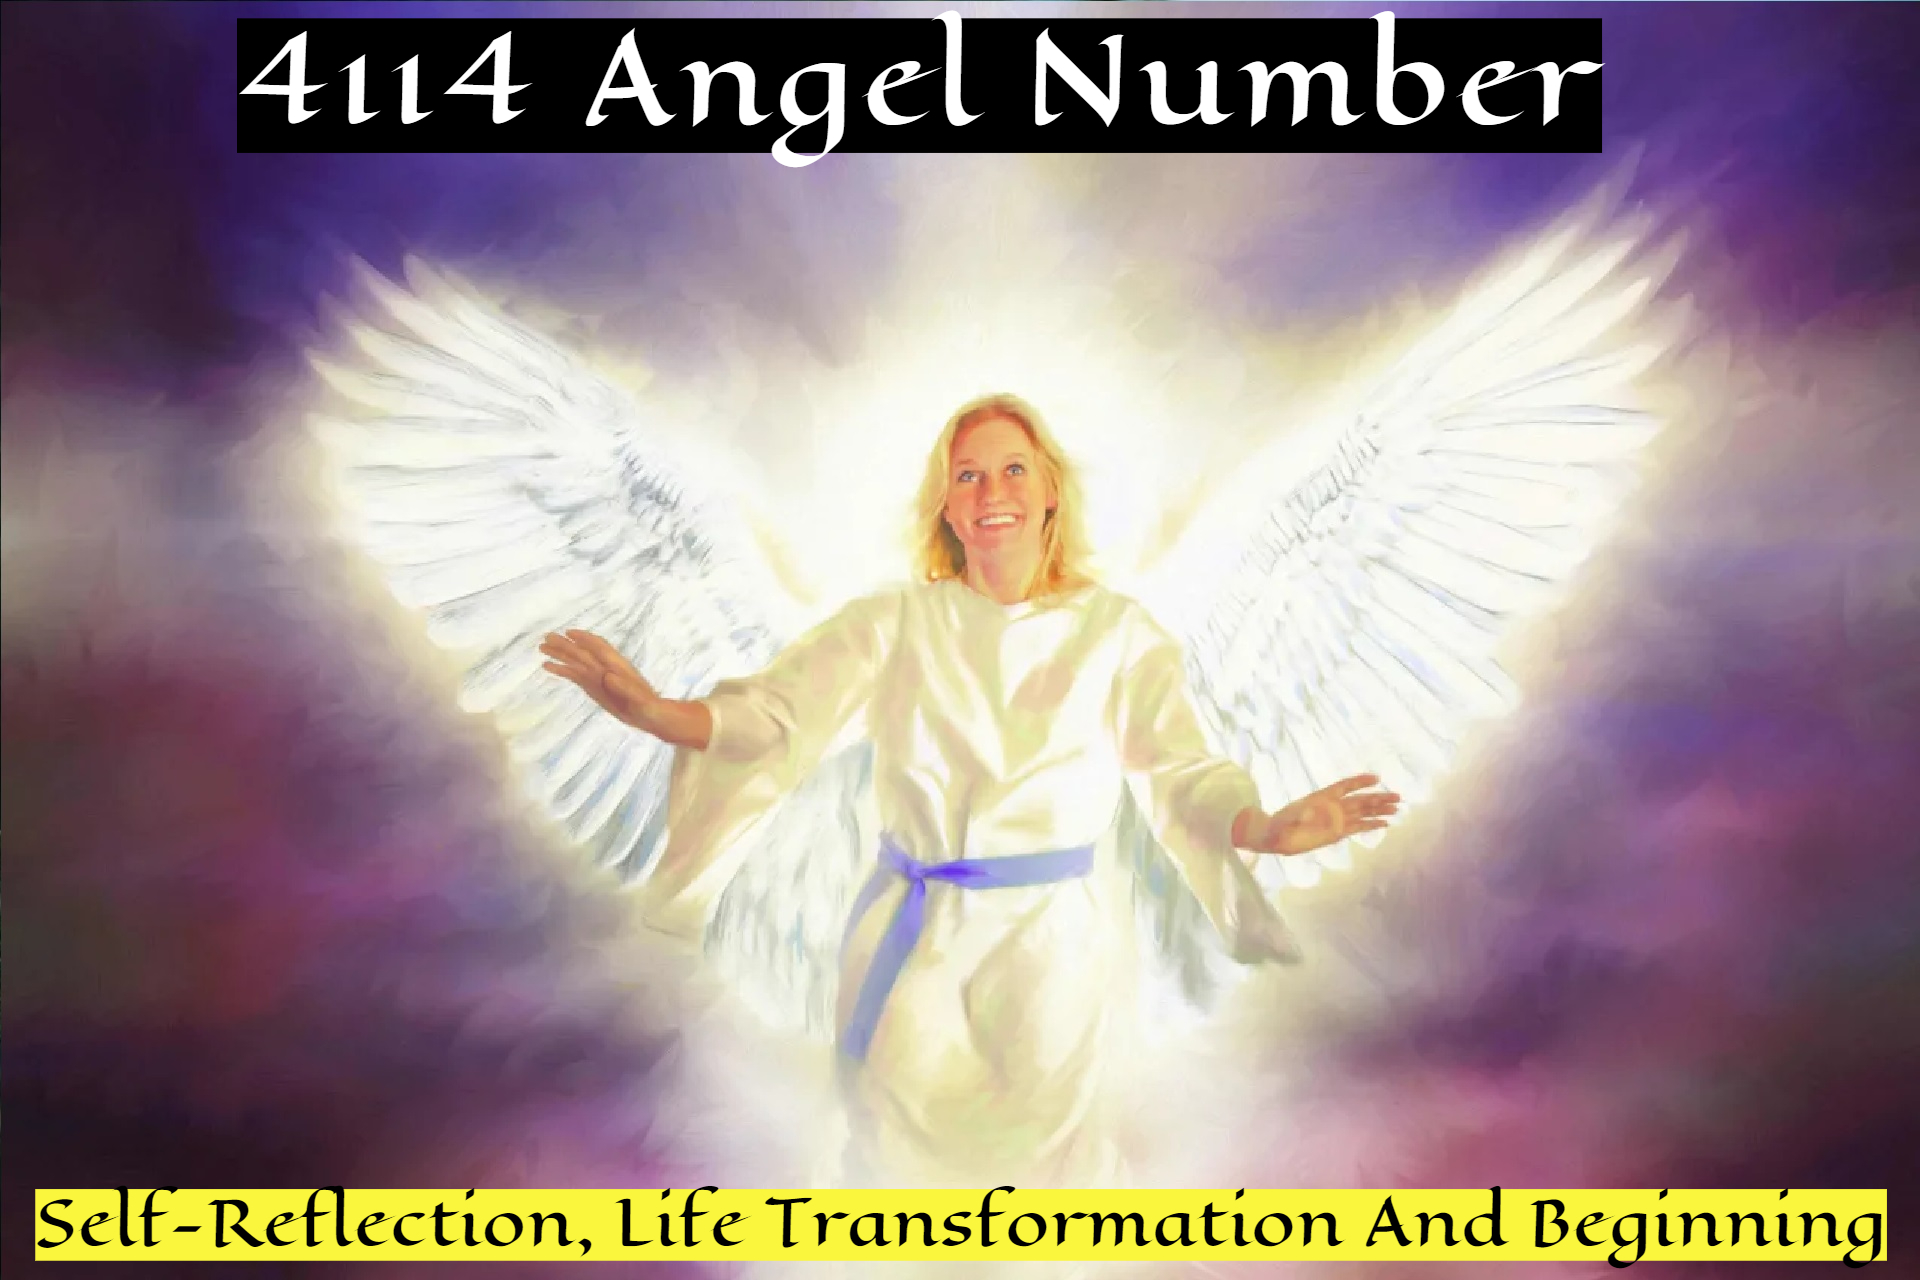 4114 Angel Number Symbolizes Leadership